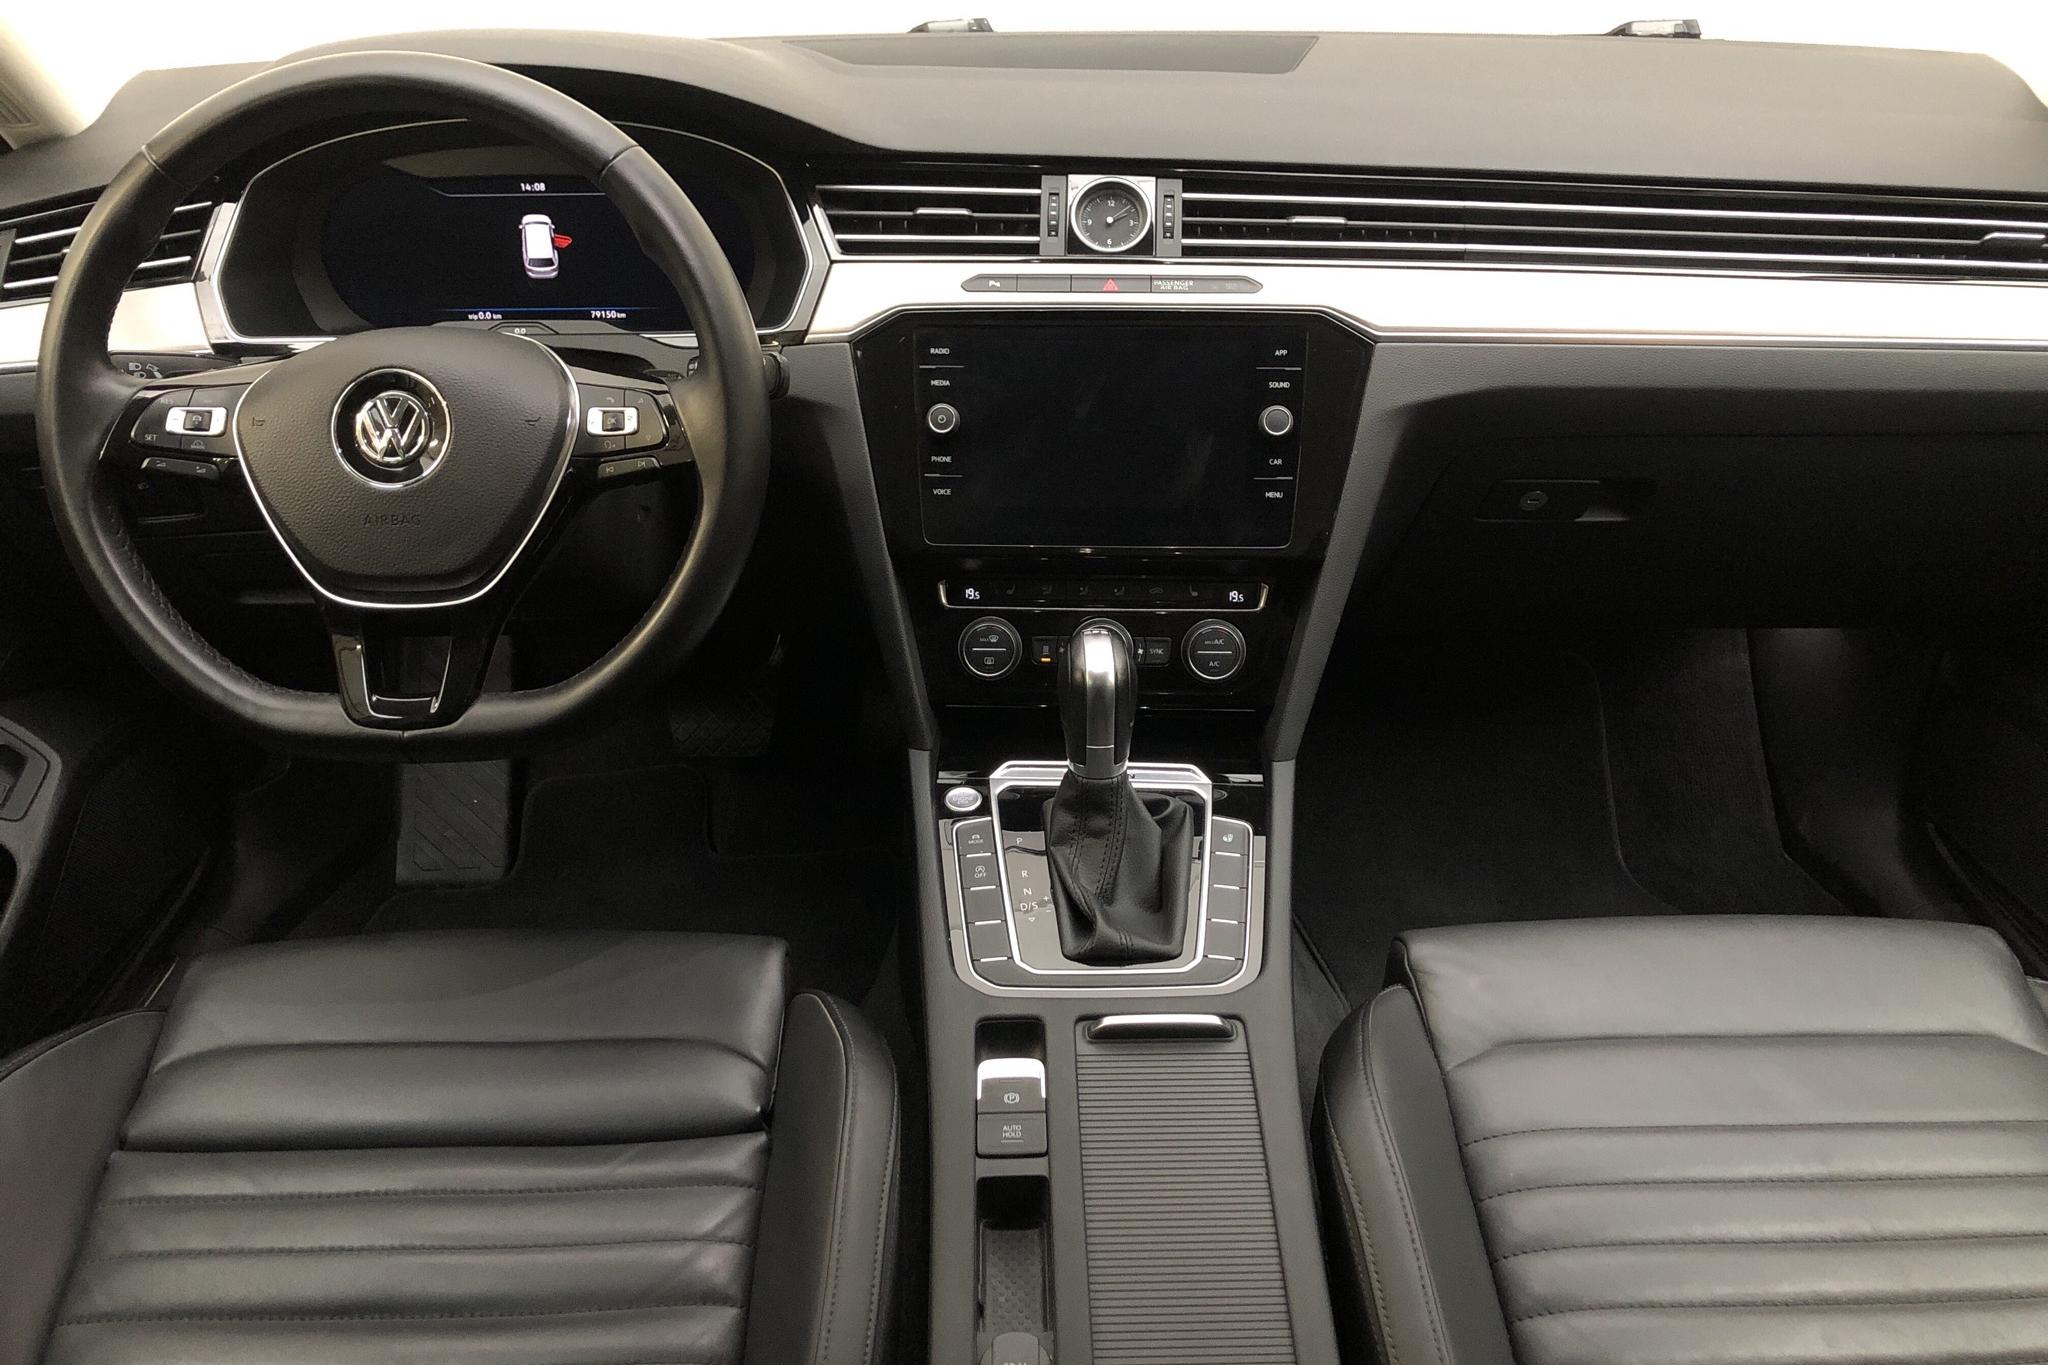 VW Passat 2.0 TDI BiTurbo Sportscombi 4MOTION (240hk) - 7 915 mil - Automat - vit - 2018